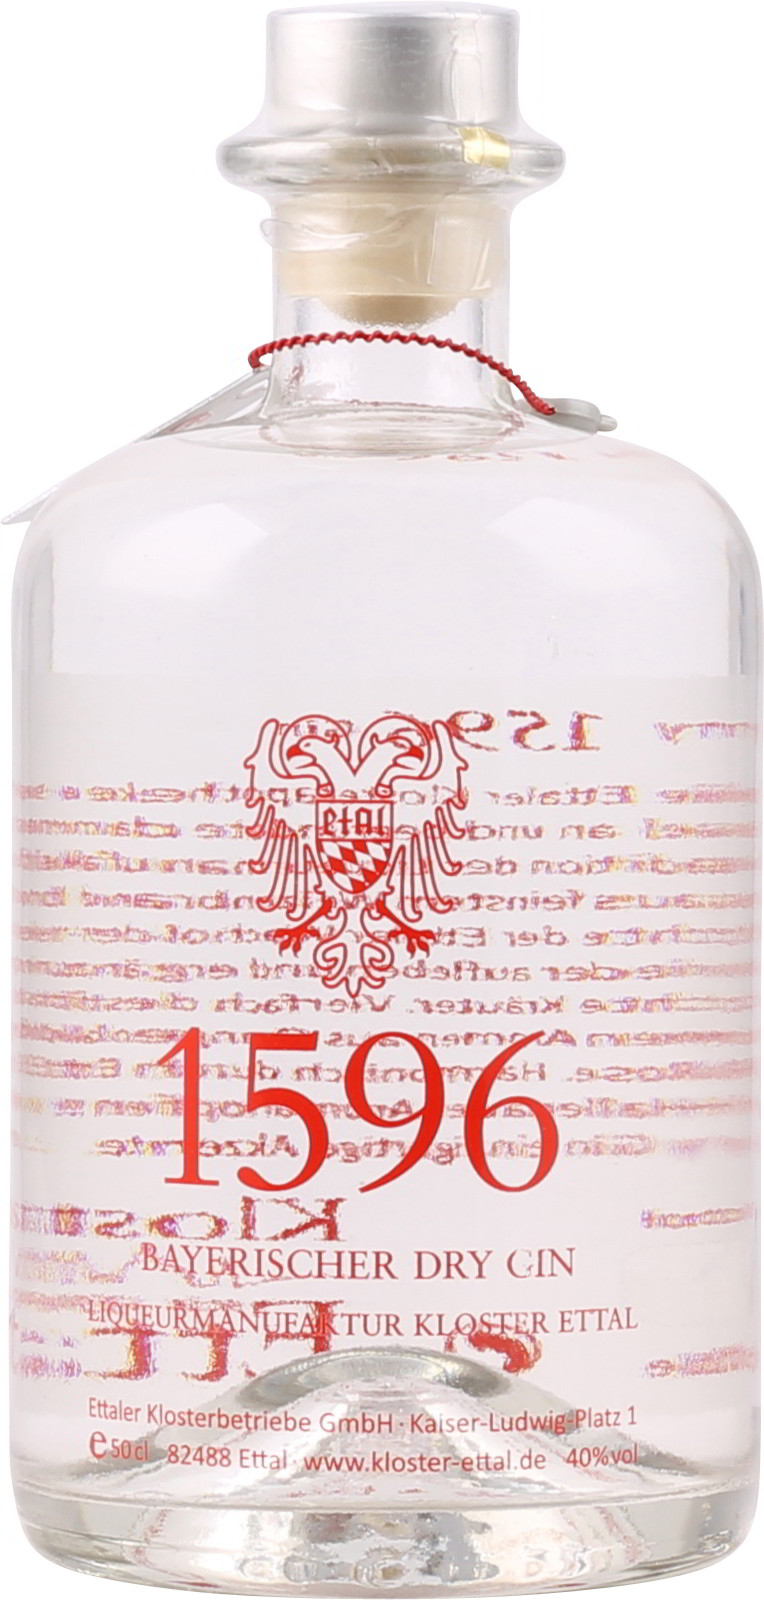 1596 Ettaler Bayerischer Dry Gin Vol. ei % 40 0,5 Liter